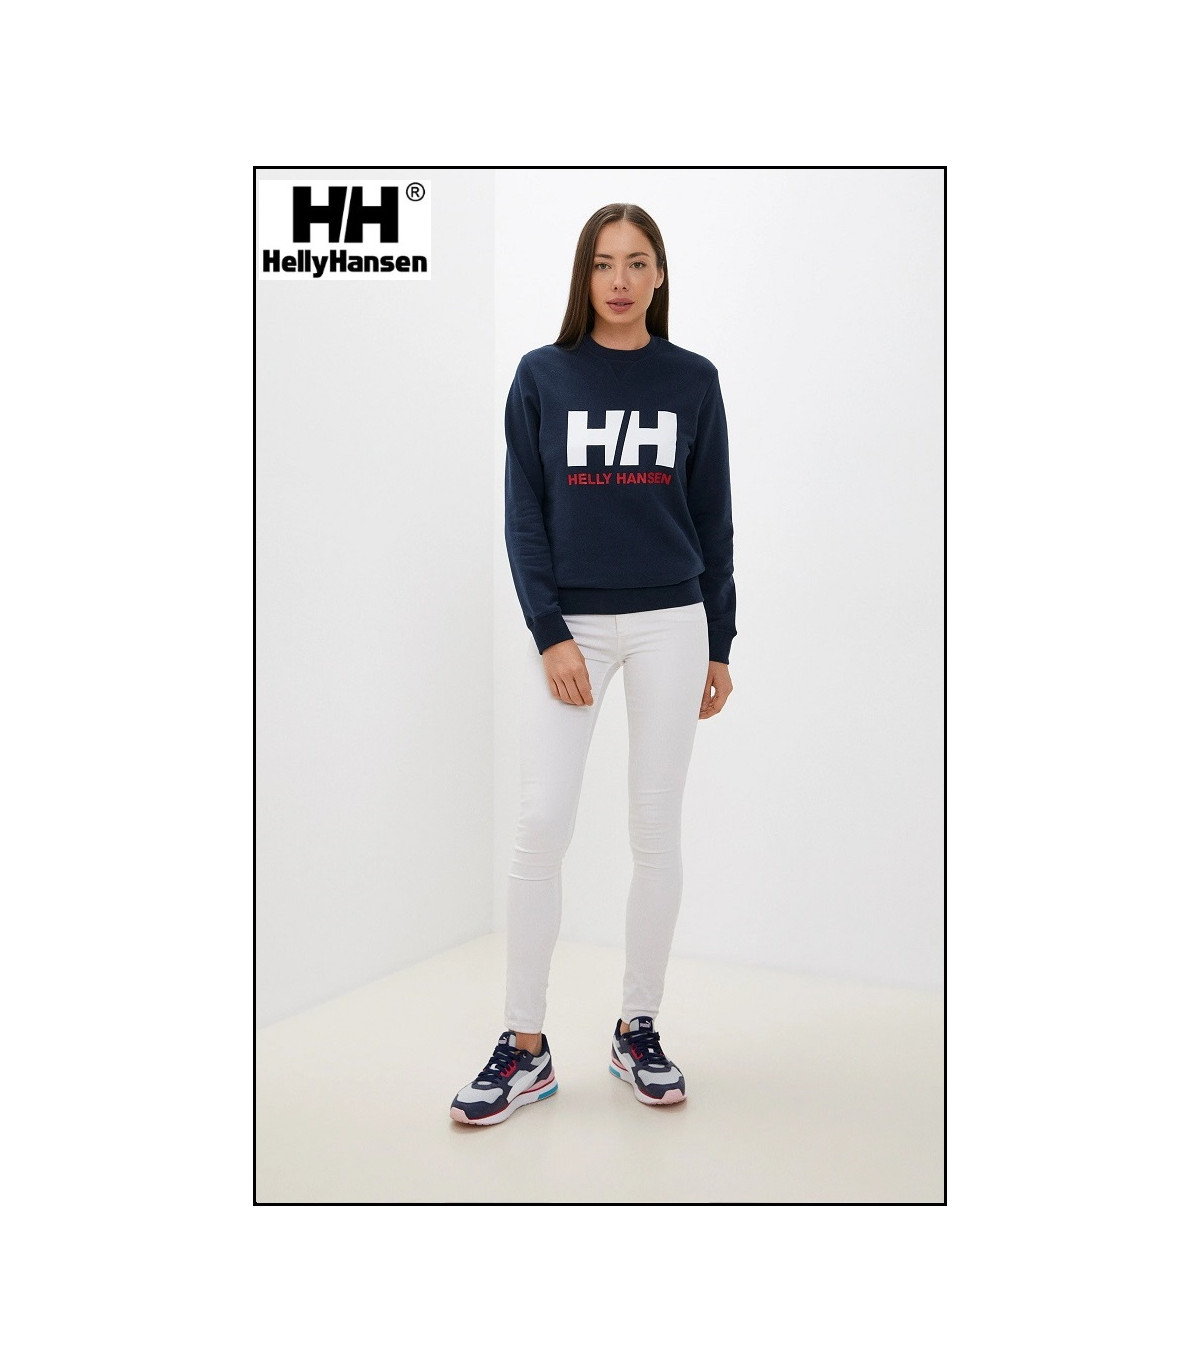 Helly-Hansen 34003 - Sudadera con logotipo para mujer